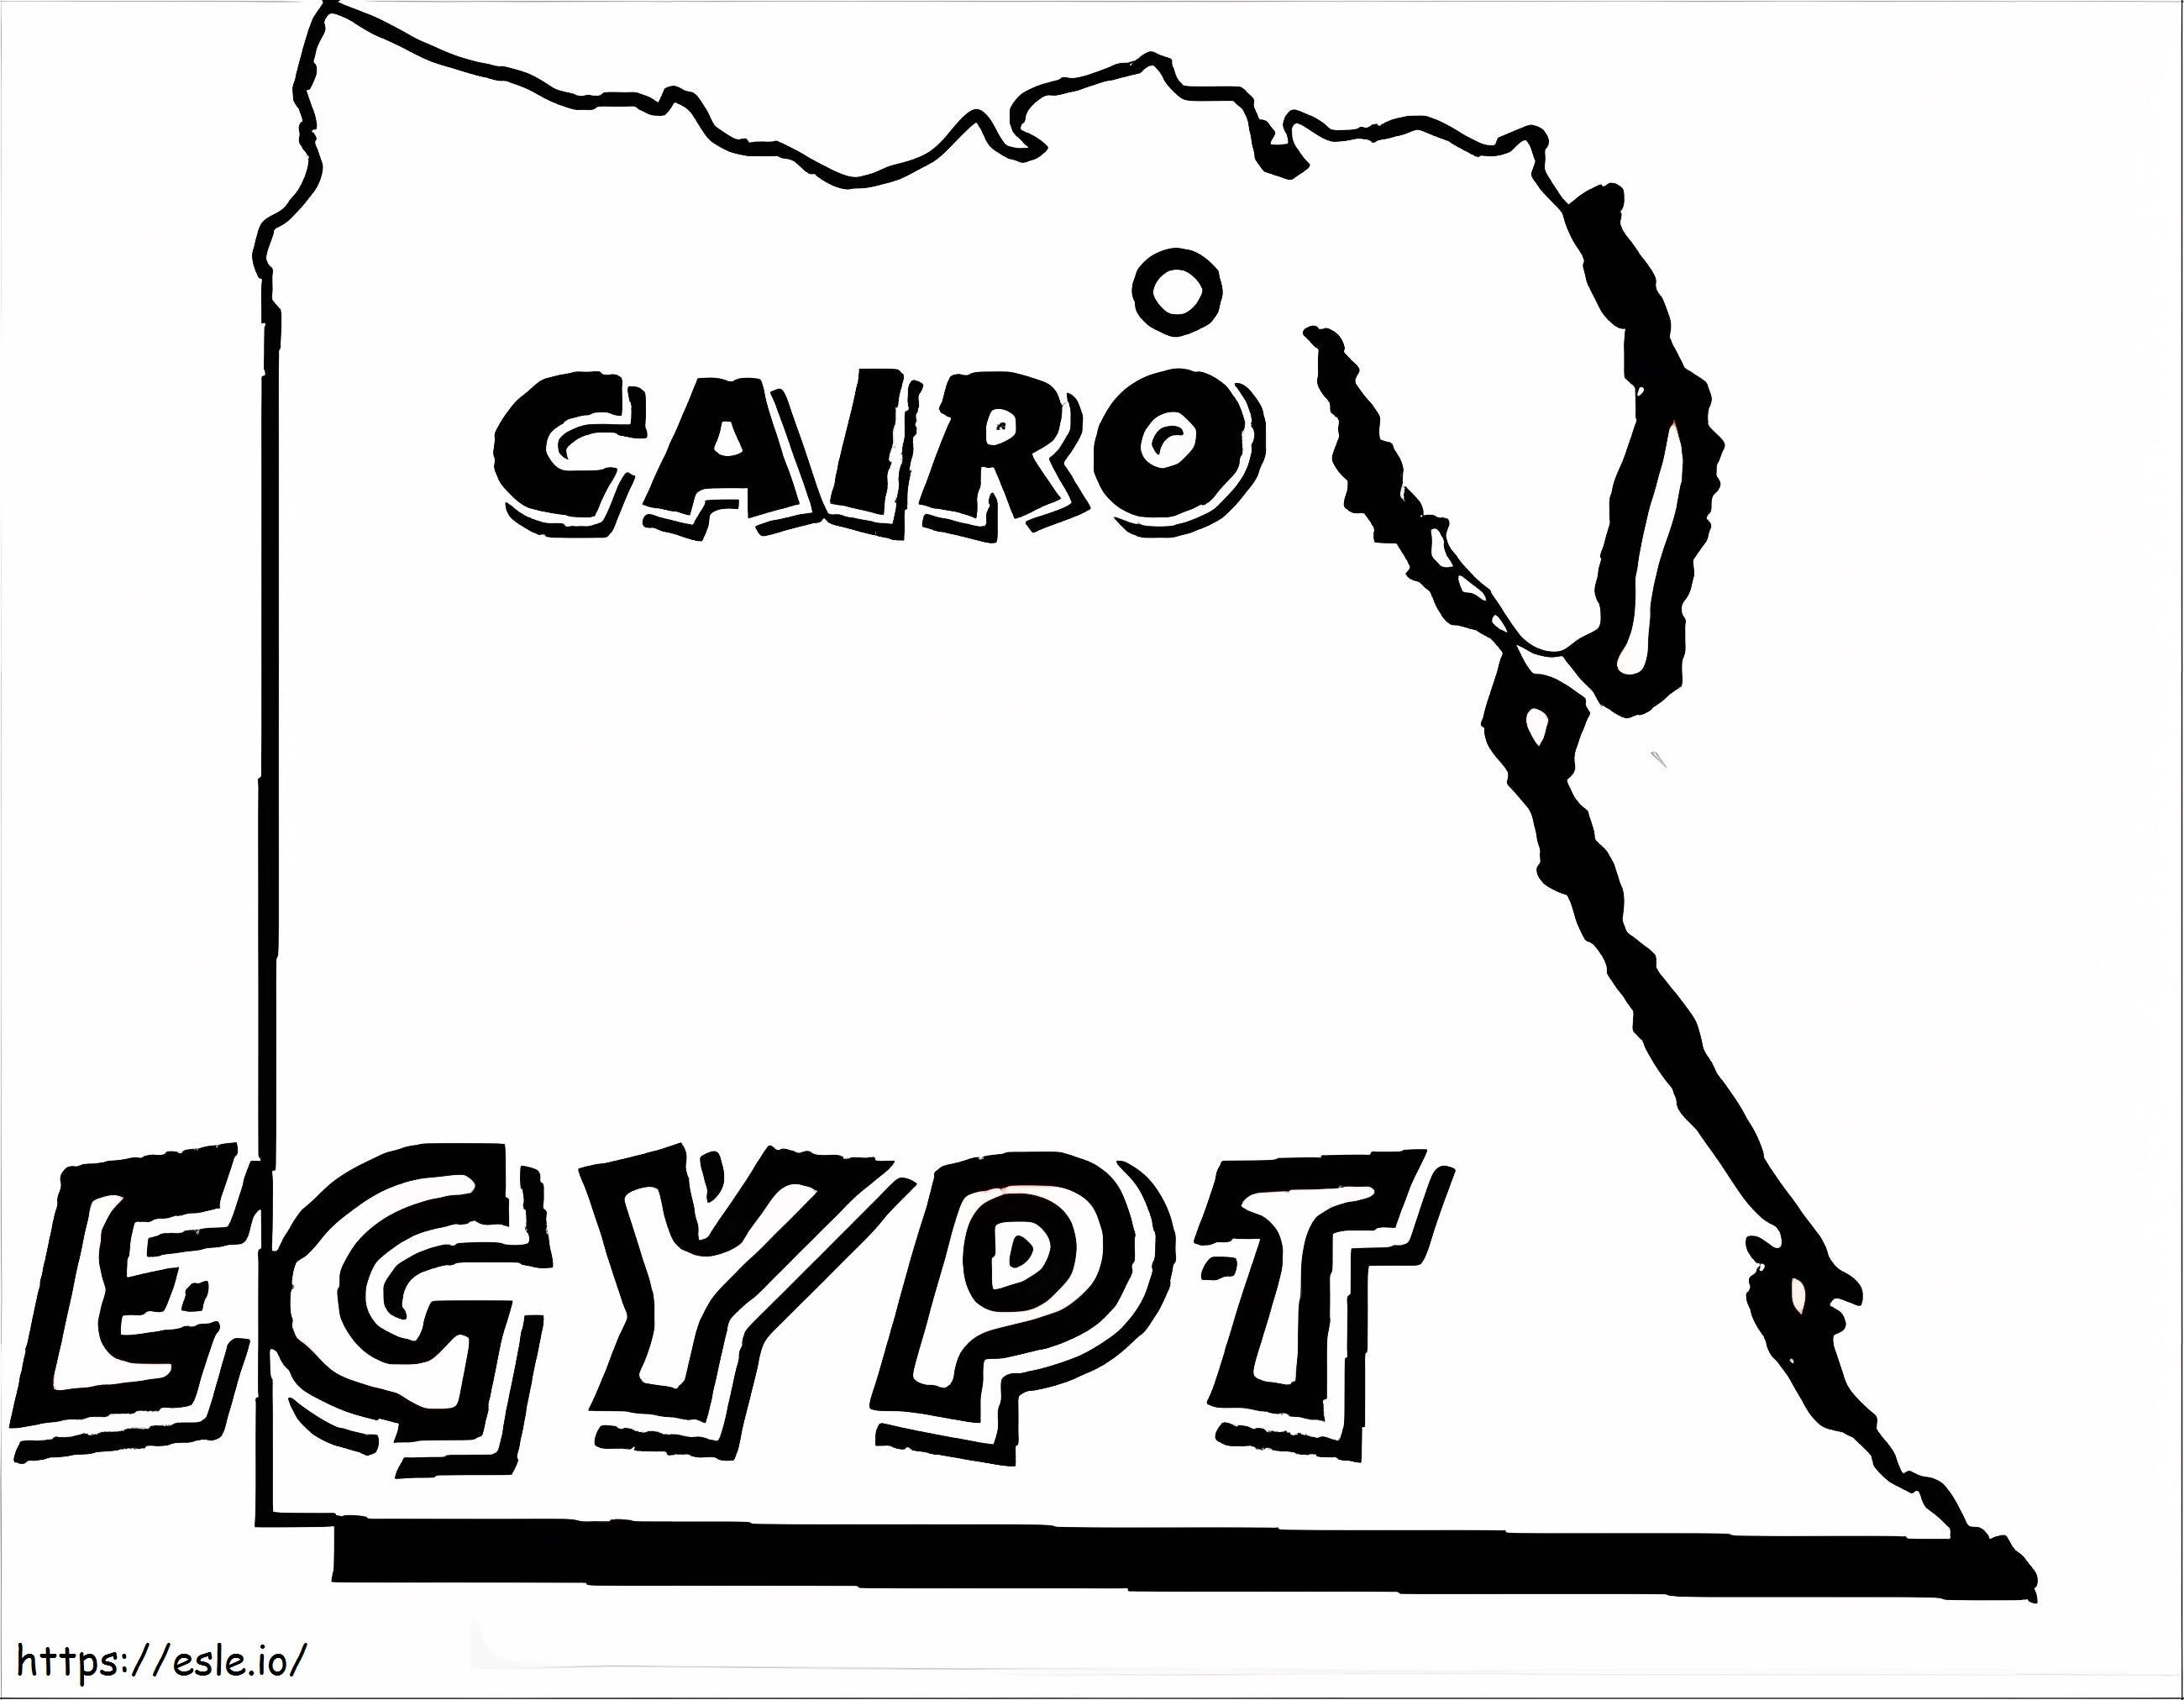 Mapa de Egipto para colorear